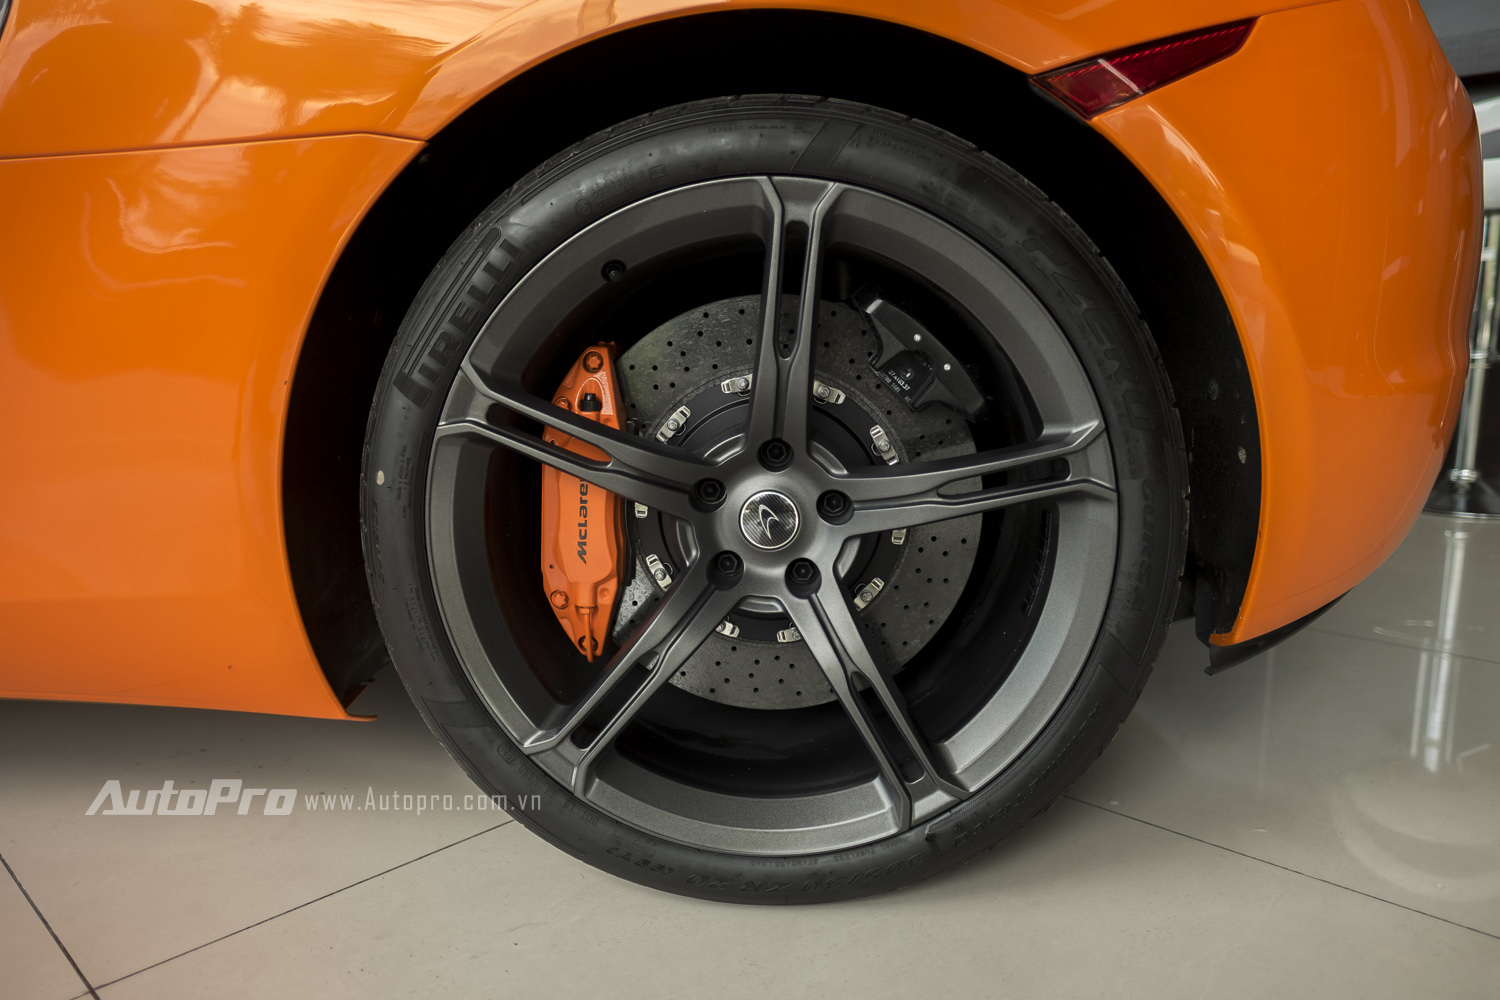 
McLaren 650S Spider trang bị lốp Pirelli kích thước lốp trước 235/35/R19 và lốp sau 305/30/R20.
